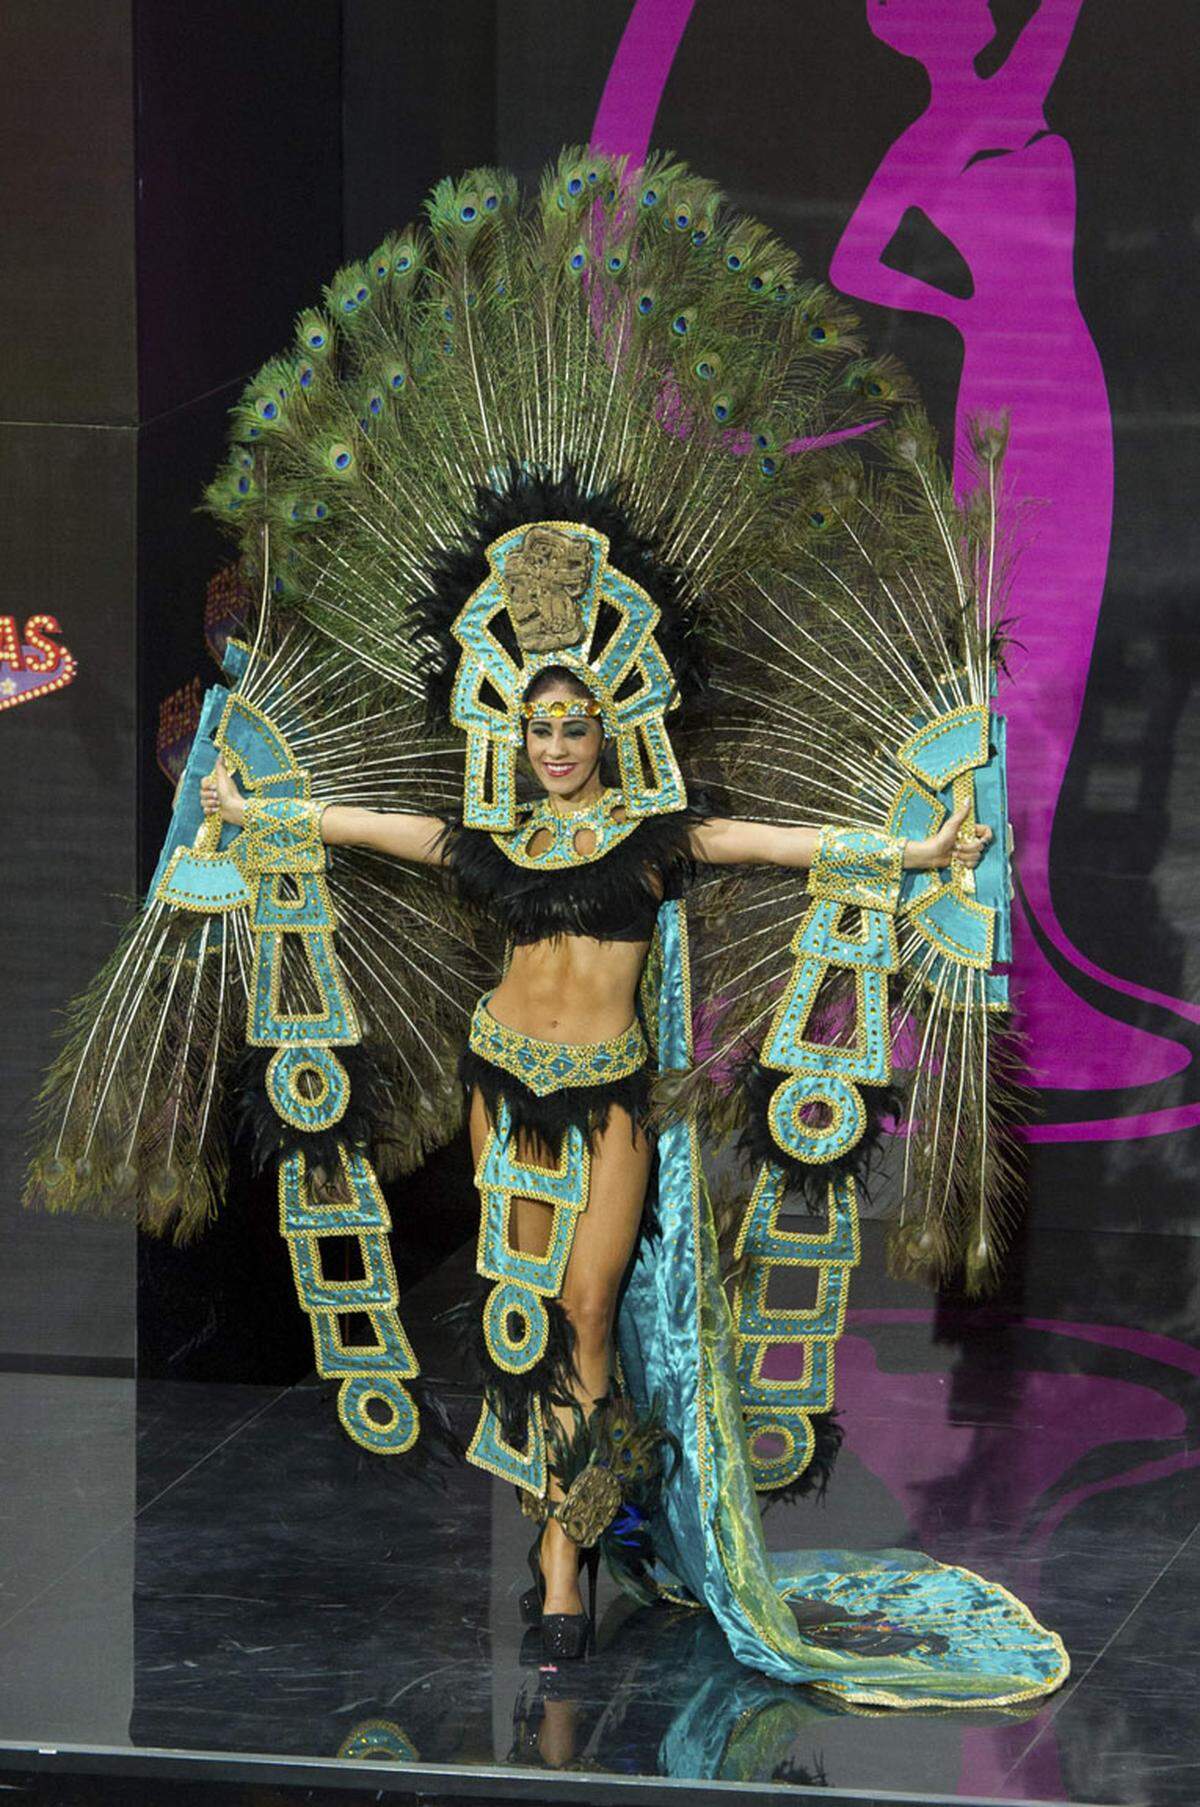 Alles, nur nicht langweilig. Auffallen um jeden Preis lautete das Motto des Kostümwettbewerbes im Zuge der Miss Universe Wahl in Moskau. Diana Schoutsen, Miss Honduras 2013, schmückte sich mit fremden Federn.